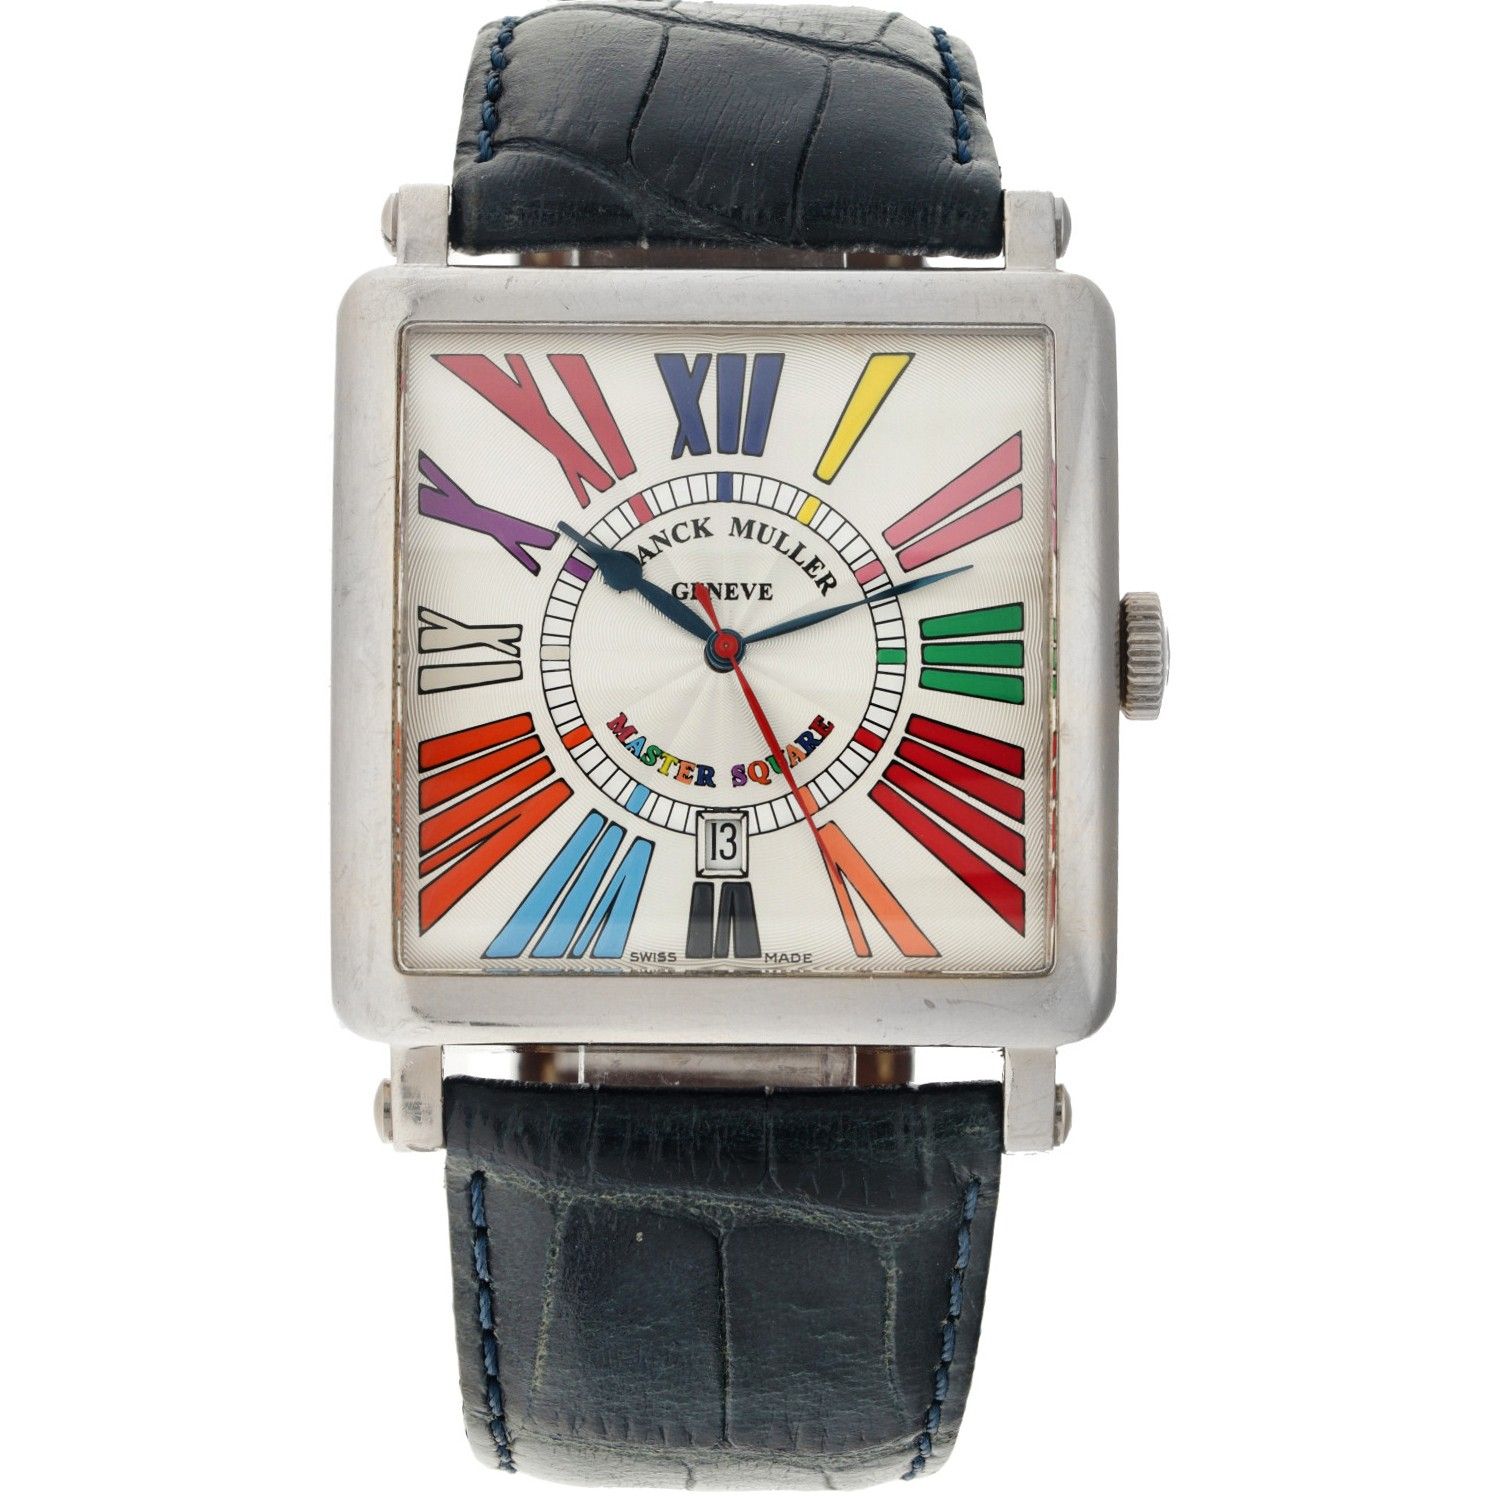 Franck Muller Master Square Color Dreams 6000 K SC DT - Men's watch - 2007. Case&hellip;